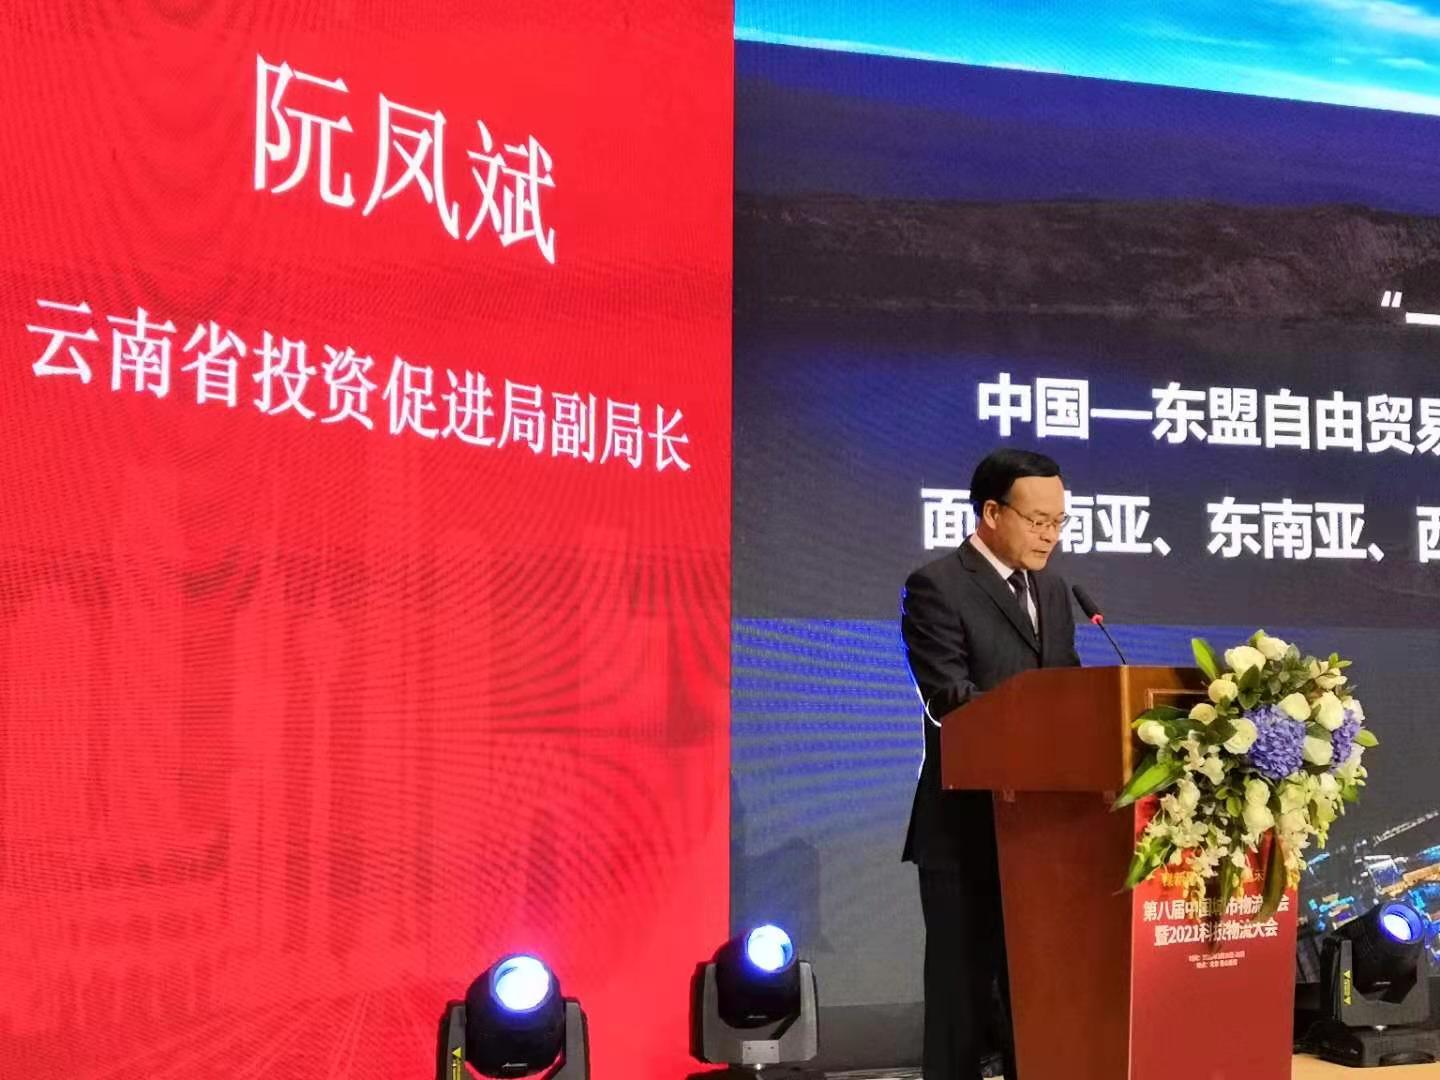 阮凤斌副局长赴北京参加第八届中国城市物流大会